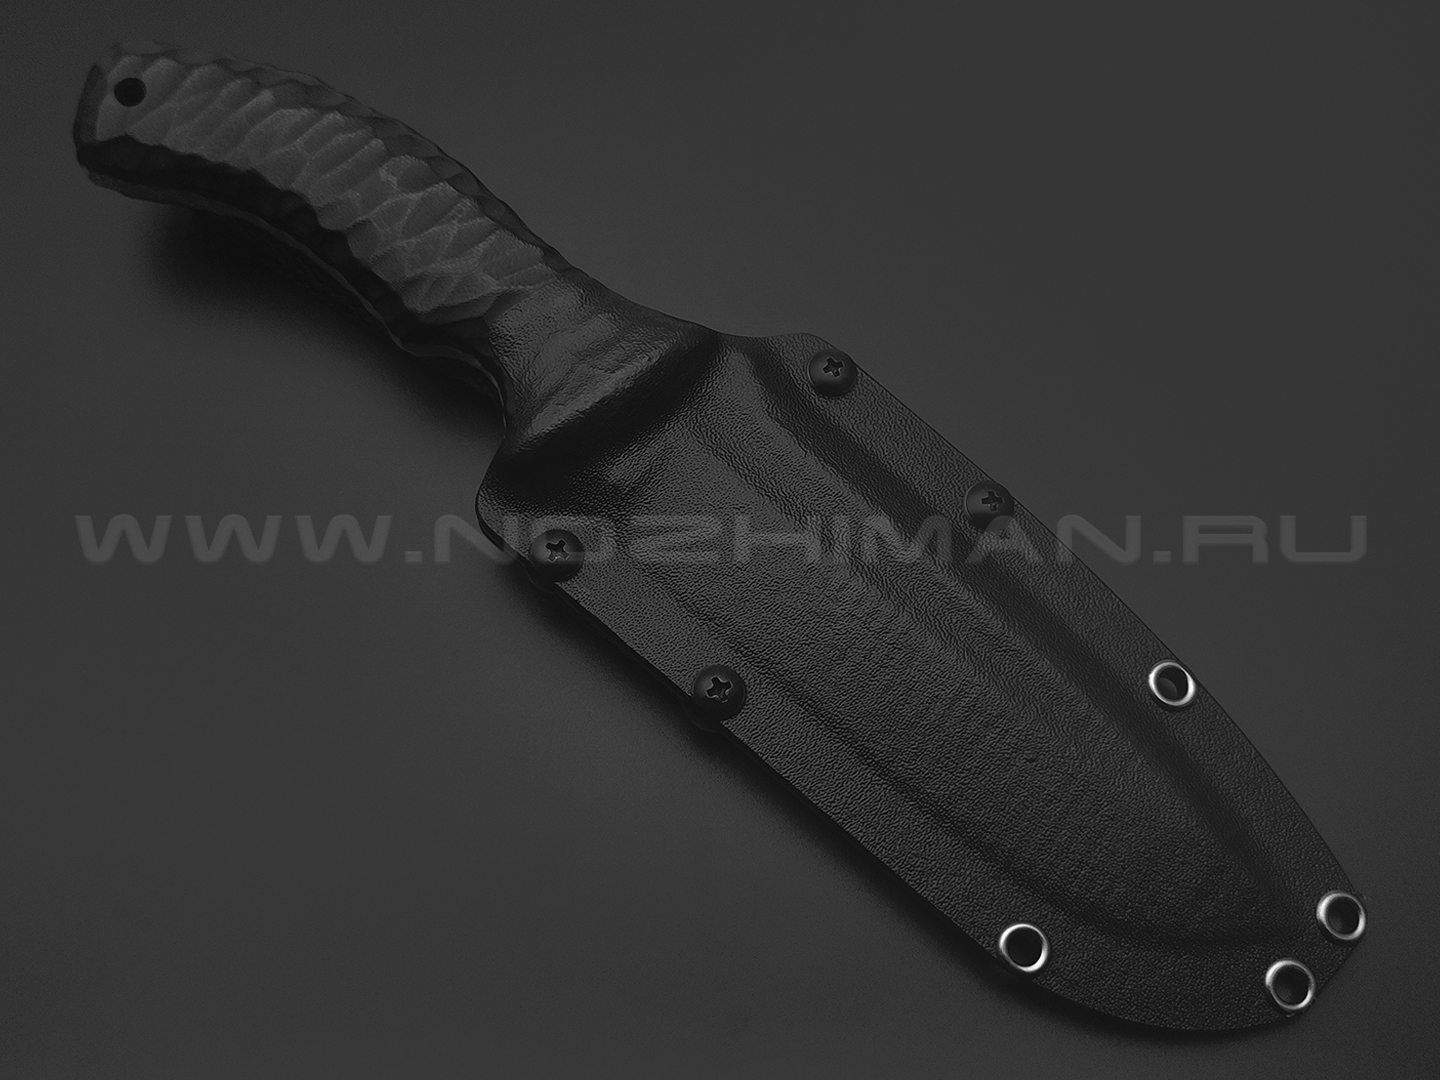 Волчий Век нож Команданте Tactical Edition сталь 95Х18 WA травление, рукоять G10 black